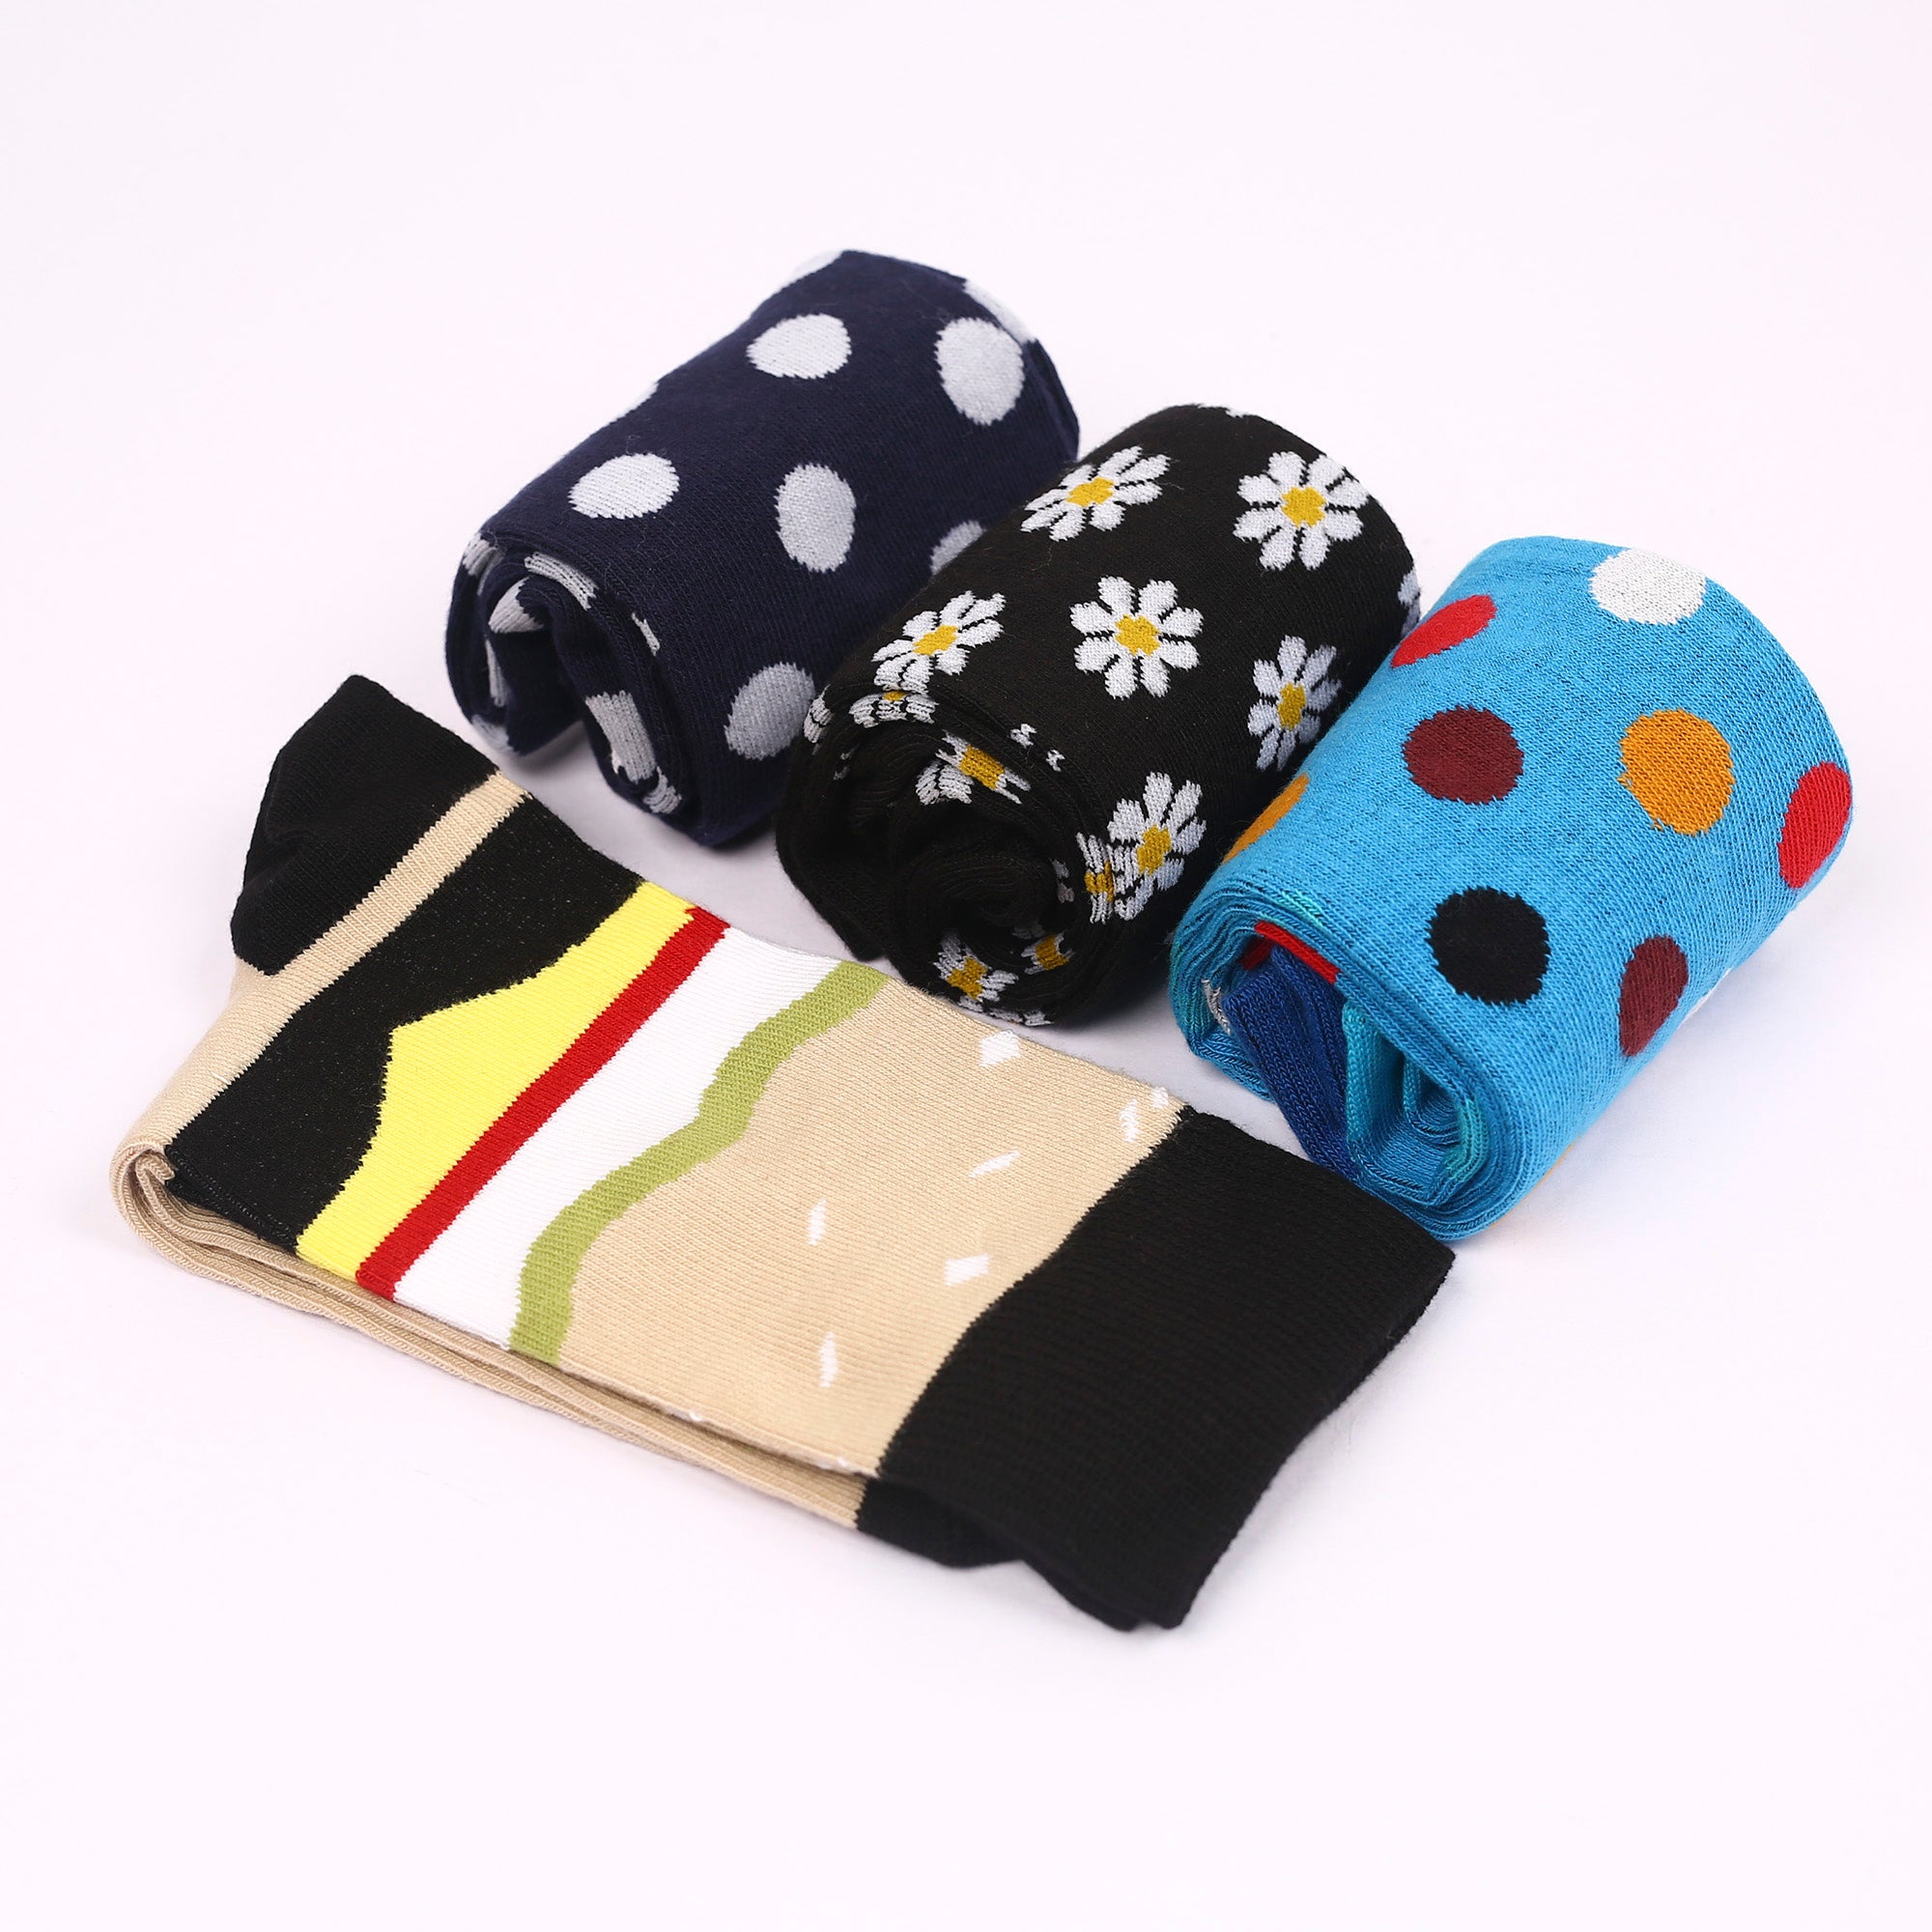 04 Pair Socks Combo Pack for Women